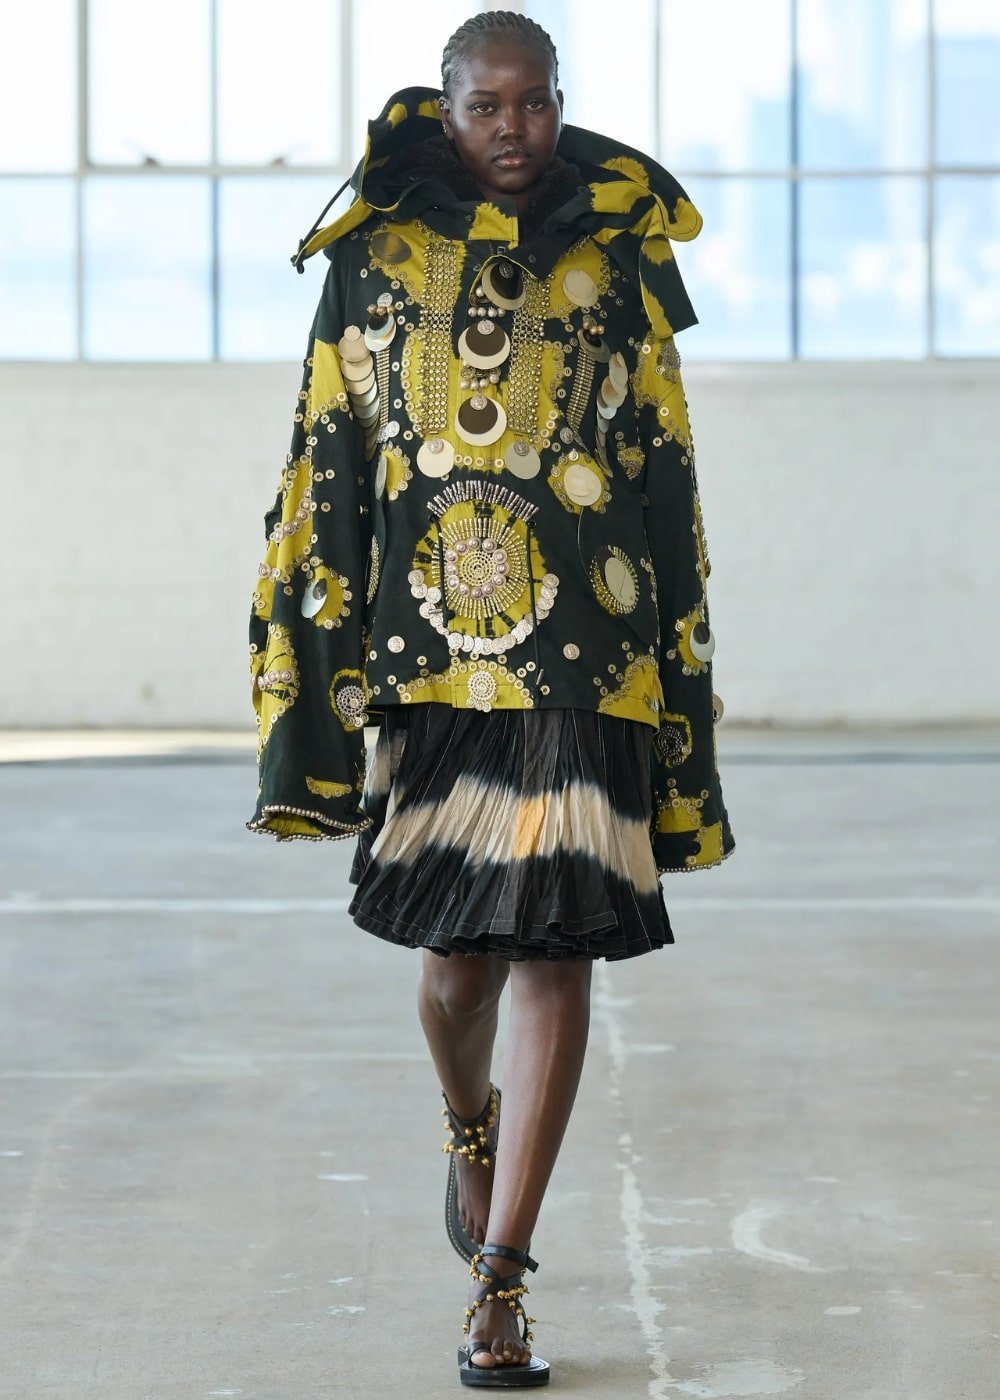 Altuzarra  - vestido étnico estampado amarelo e preto - semana de moda de Nova York - Primavera - modelo andando pela passarela - https://stealthelook.com.br